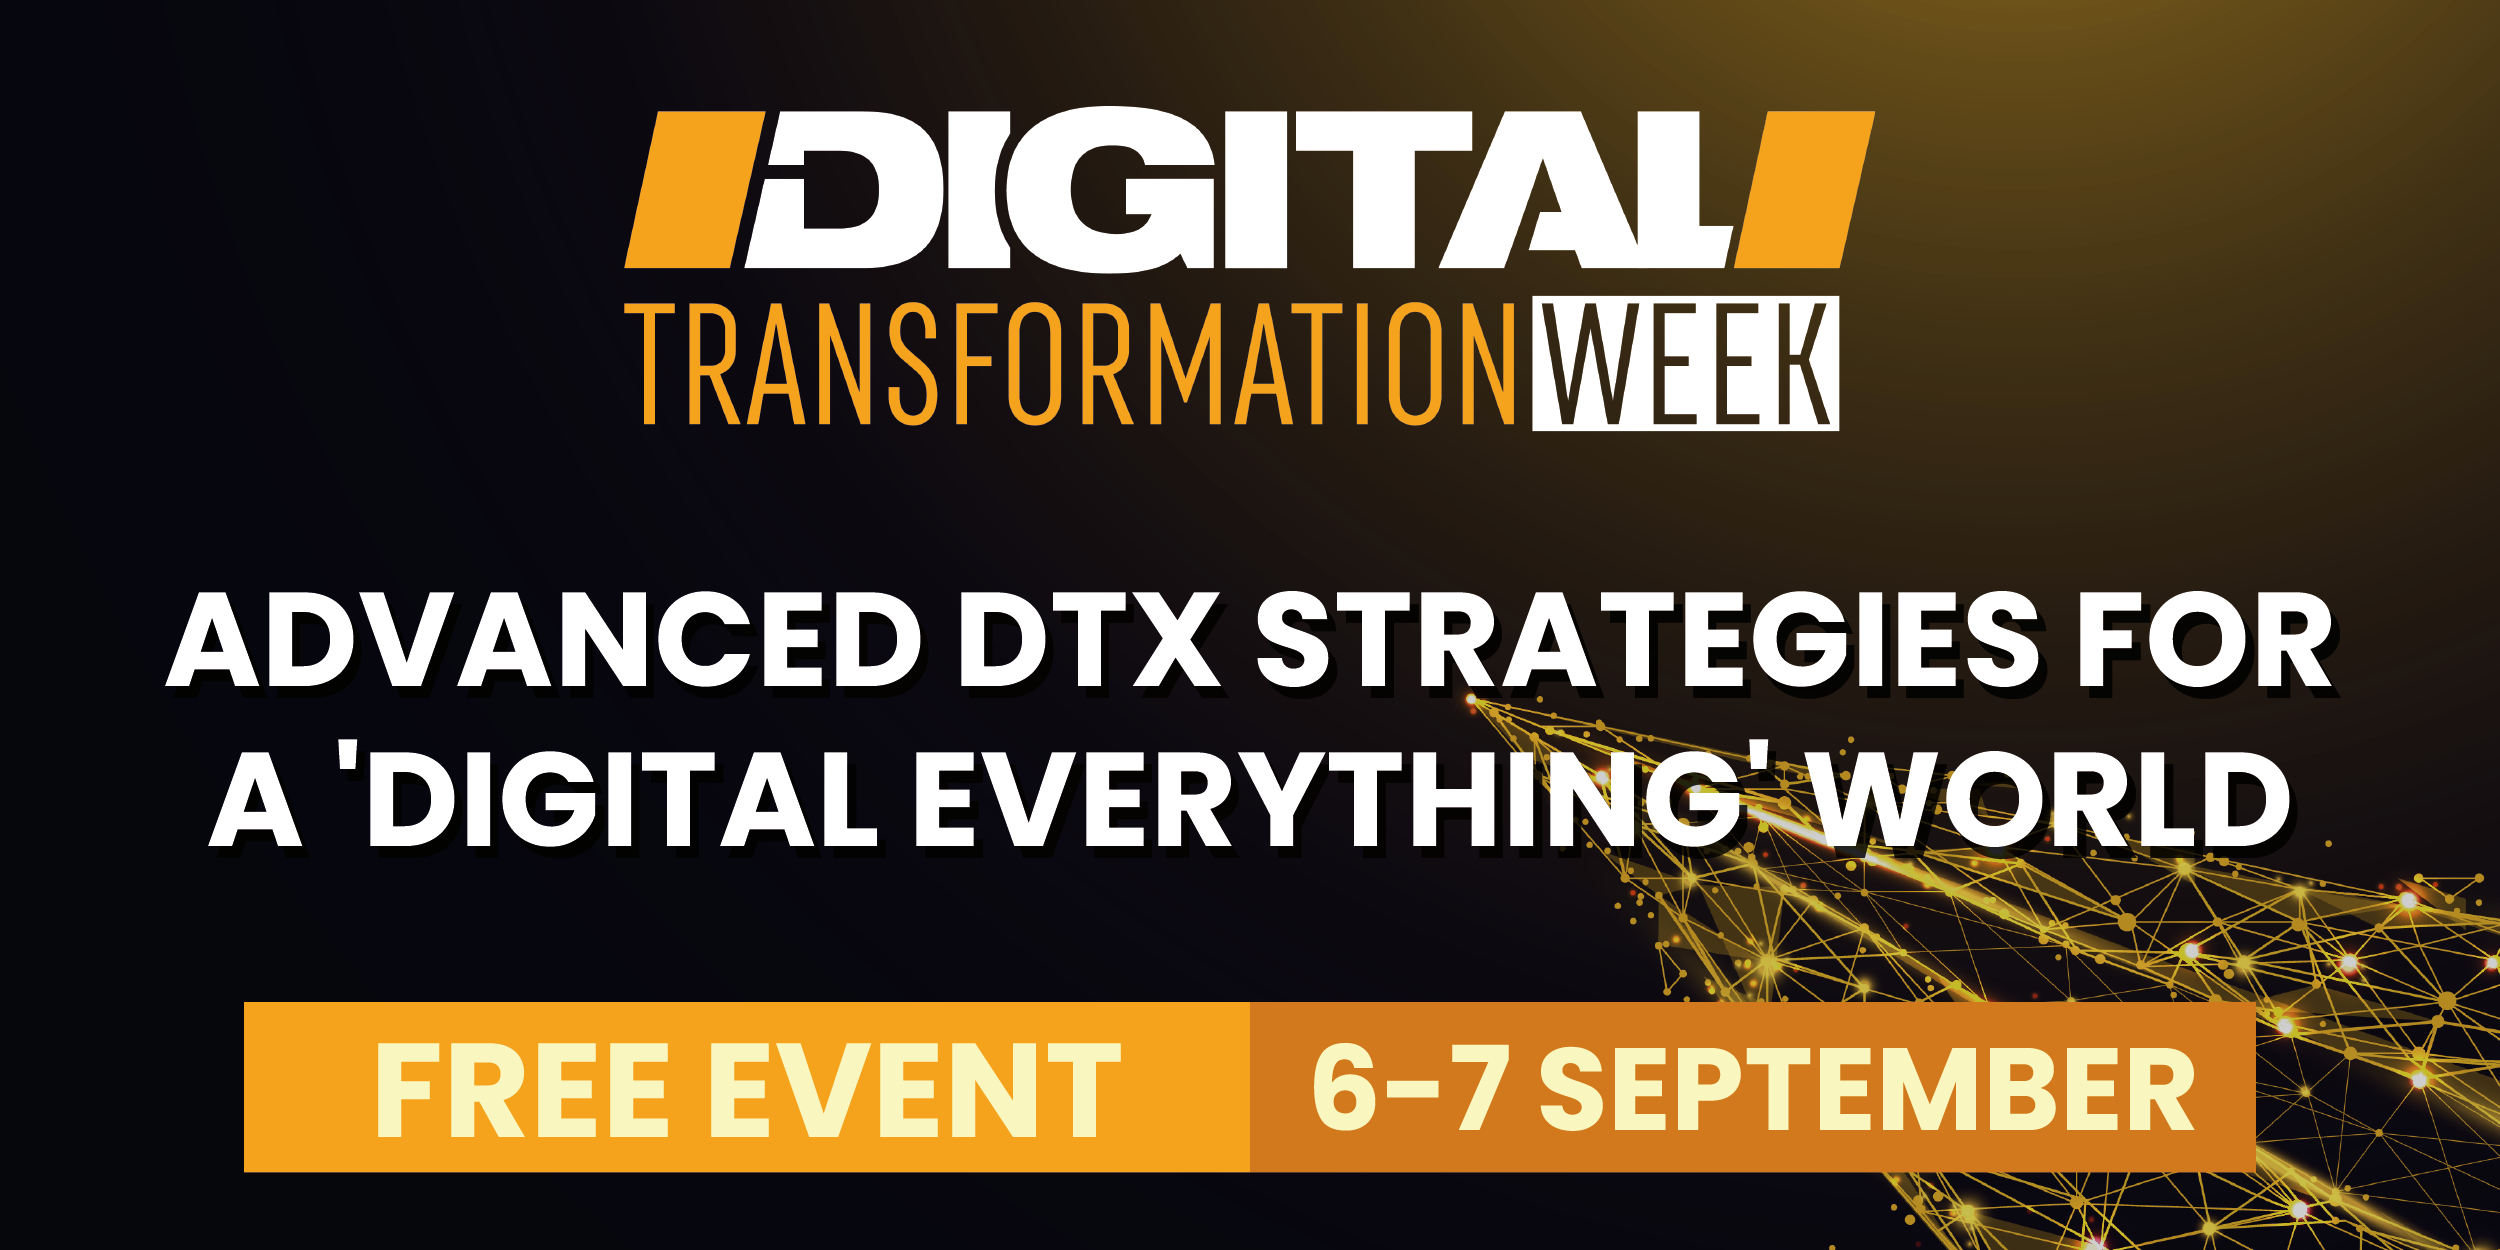 Digital Transformation Week Global  organized by Techforge